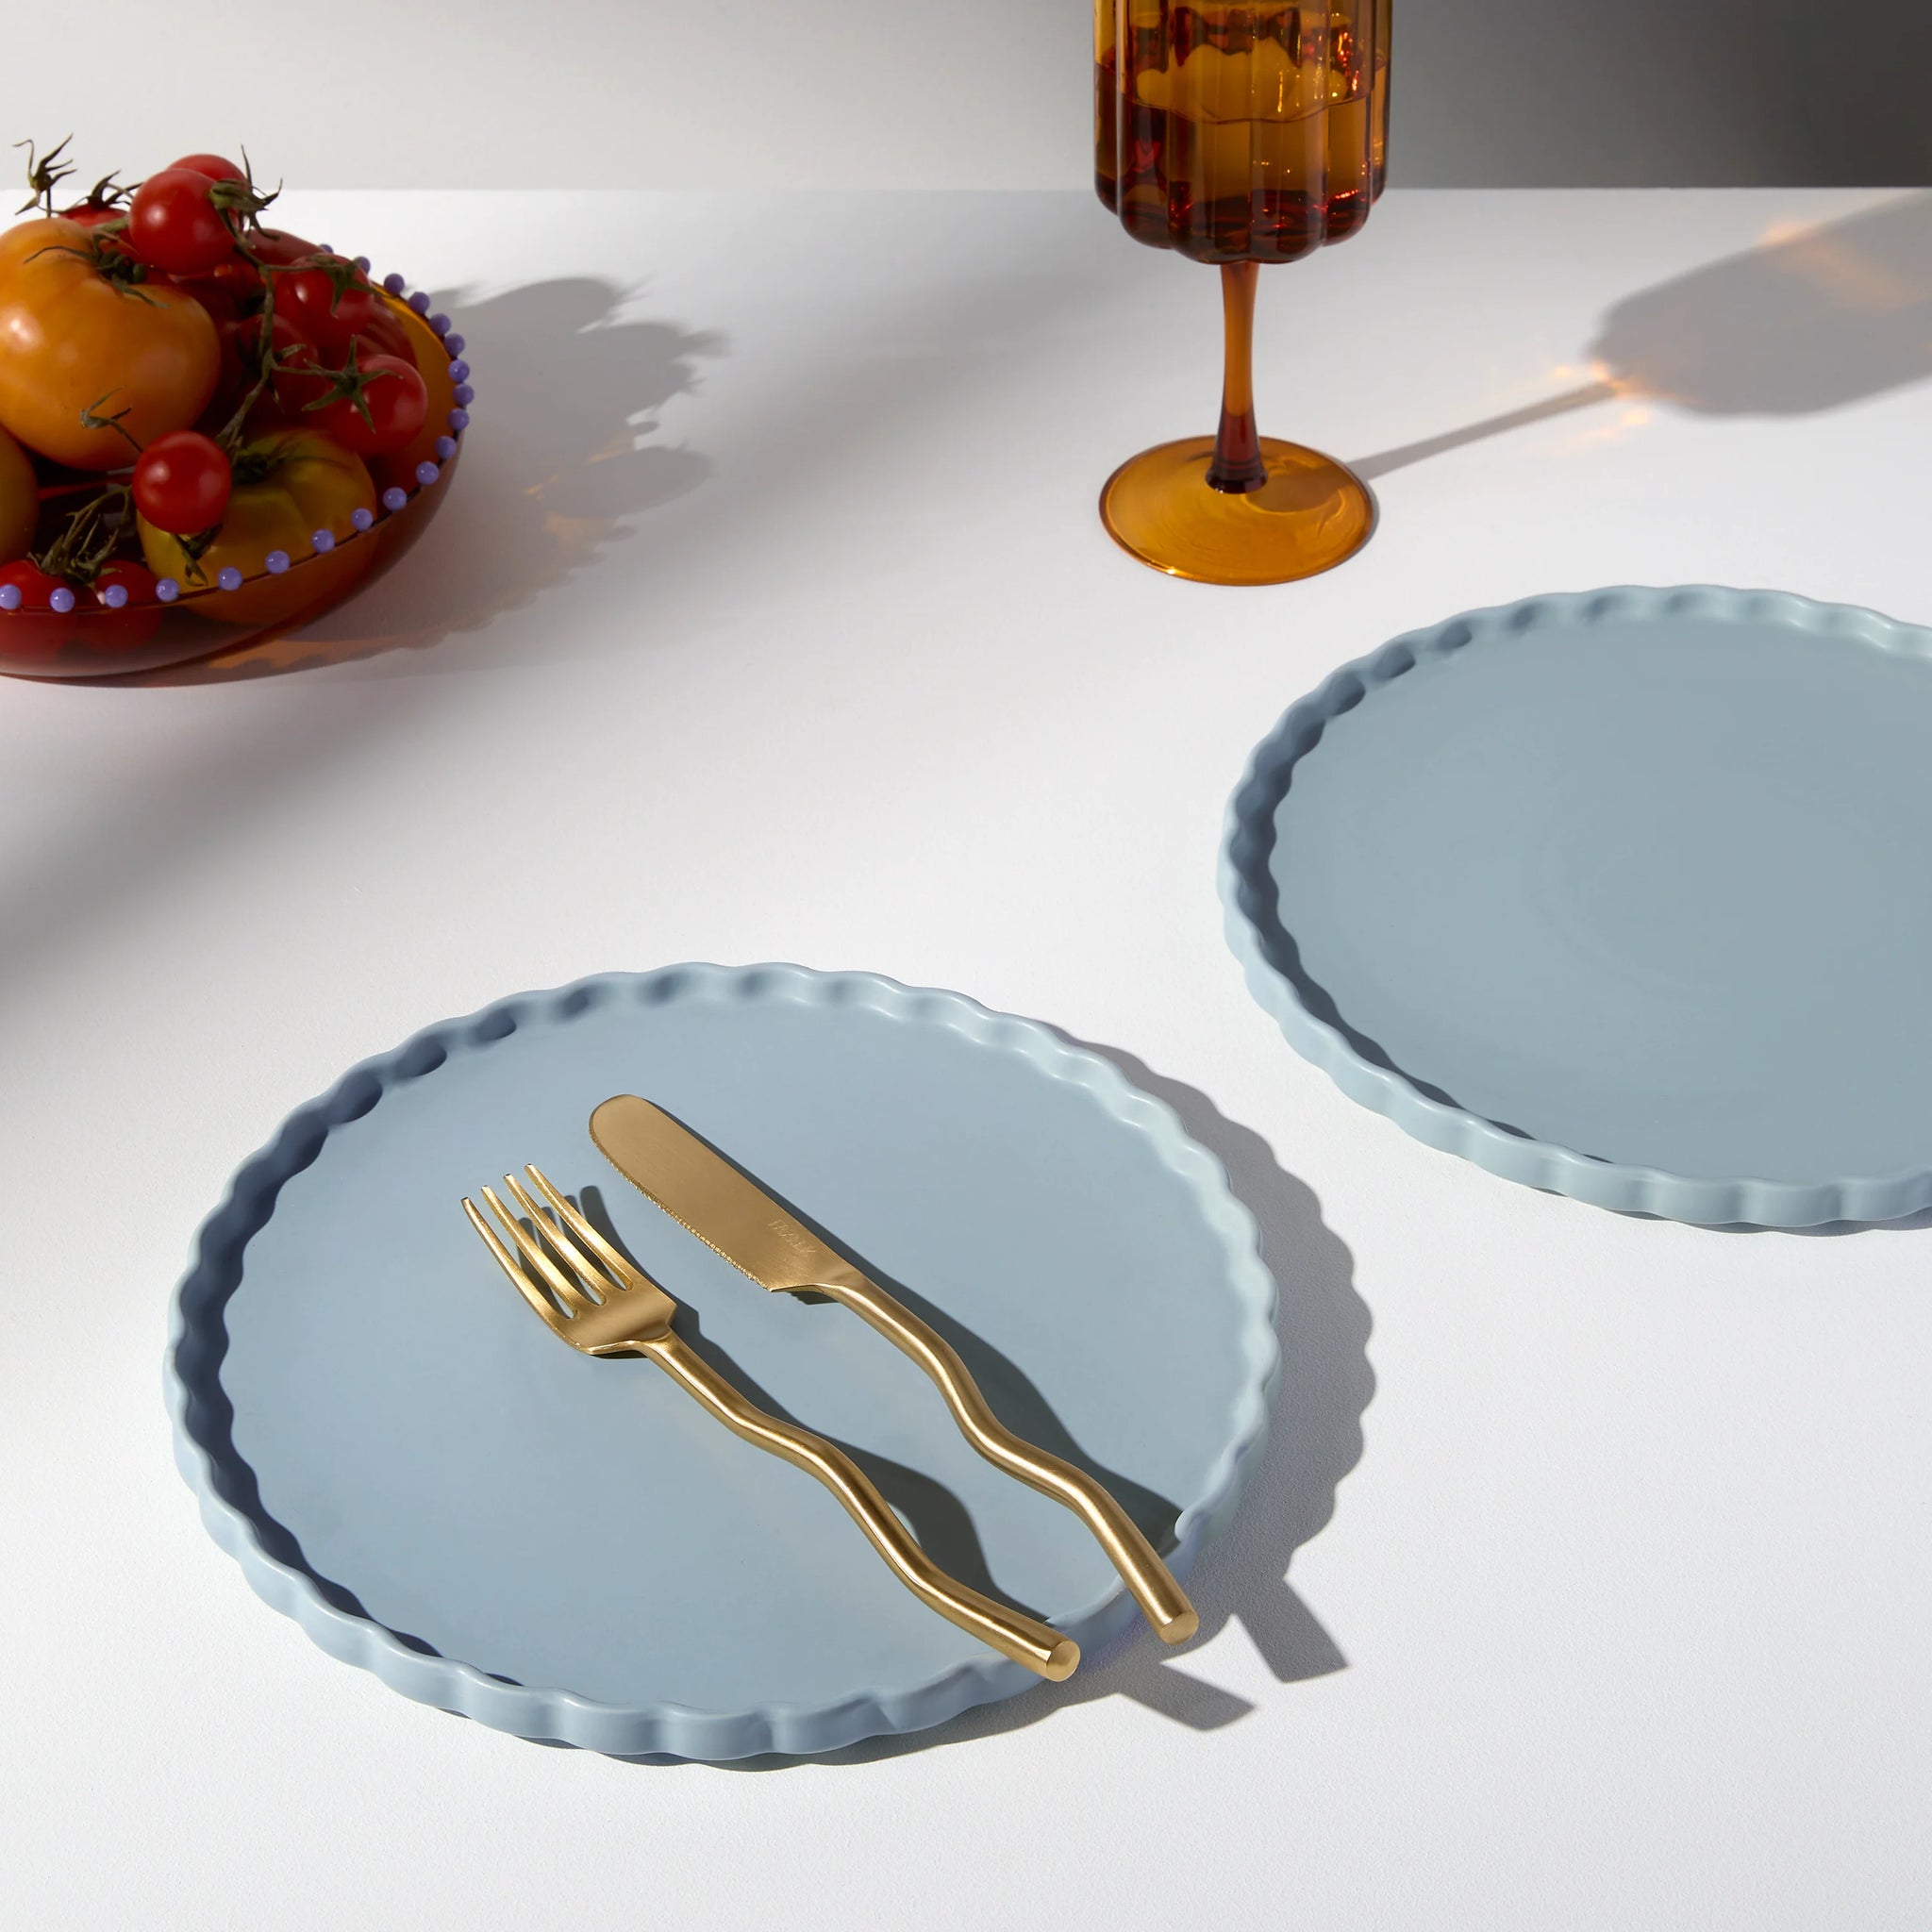 Ceramic Dinner Plate - Set of 2